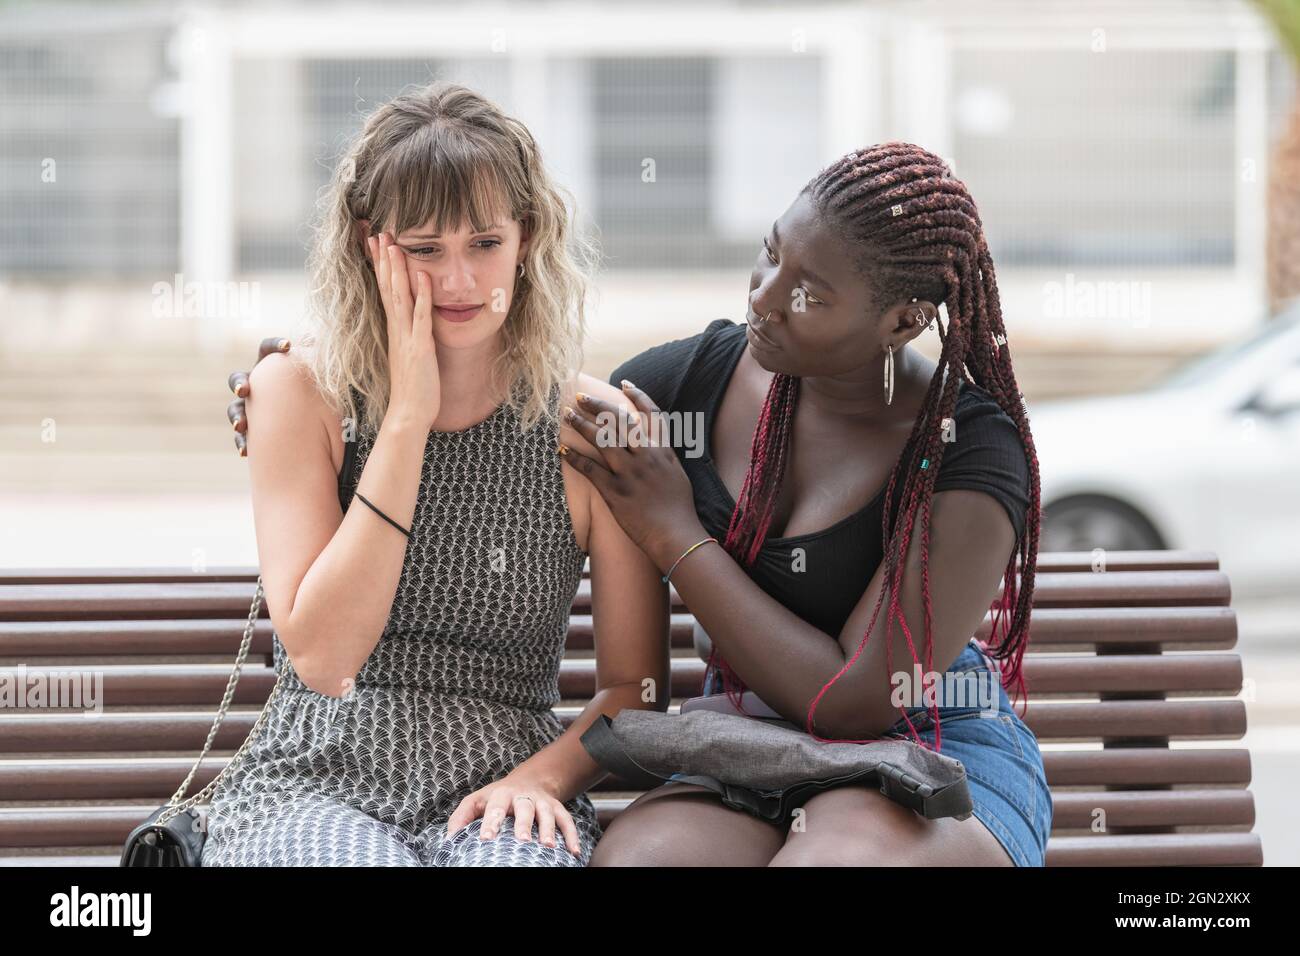 Erwachsene Frau mit beunruhigten Gesichtsausdruck, während ihr Freund sie tröstet Stockfoto